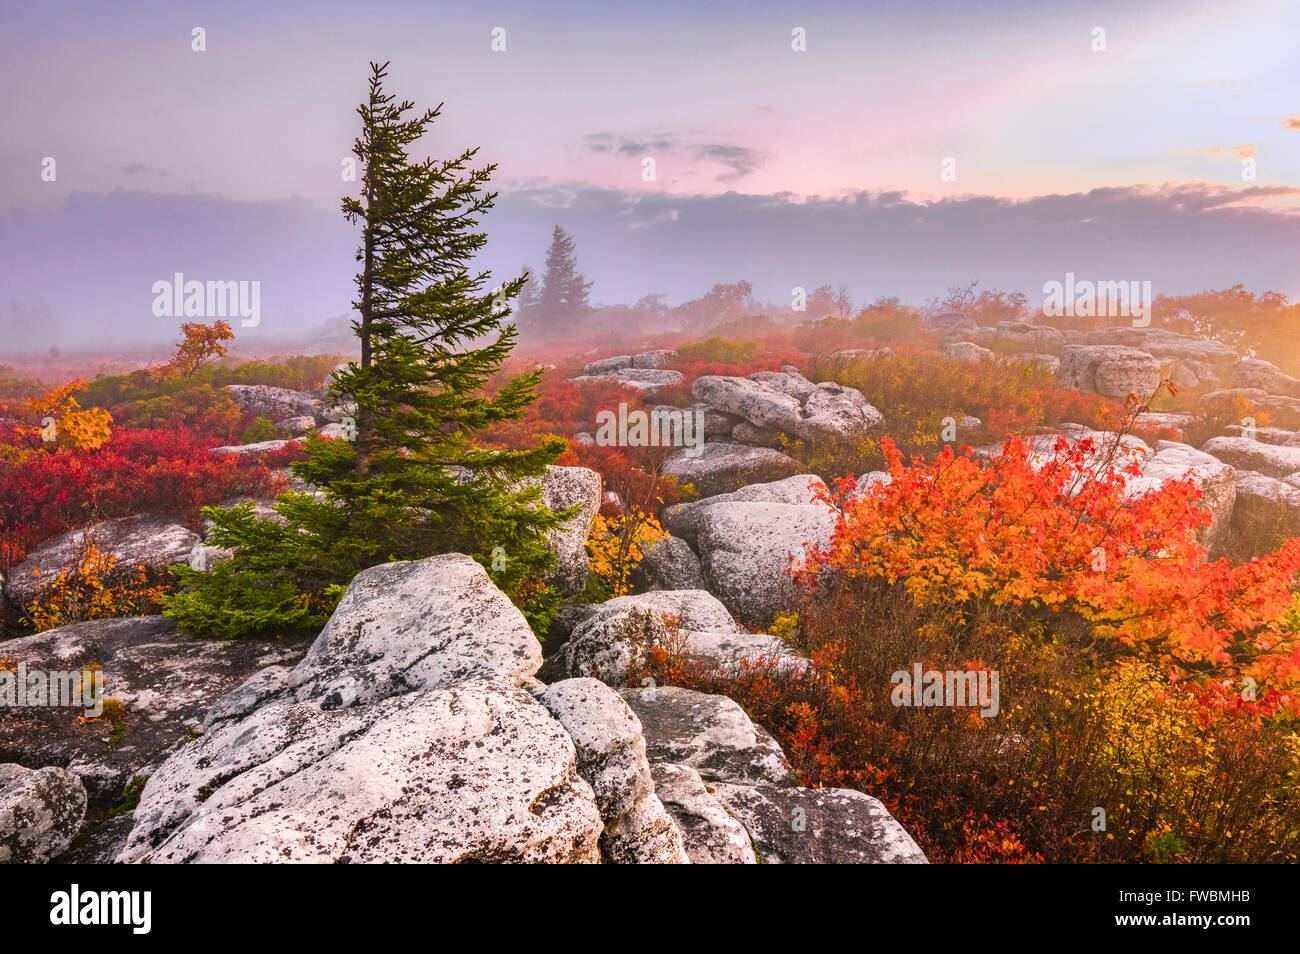 Un matin d'automne brumeux en vedette un pin balayé par contraste avec un éventail coloré de feuillage dans les hautes terres de la West Virginia Banque D'Images